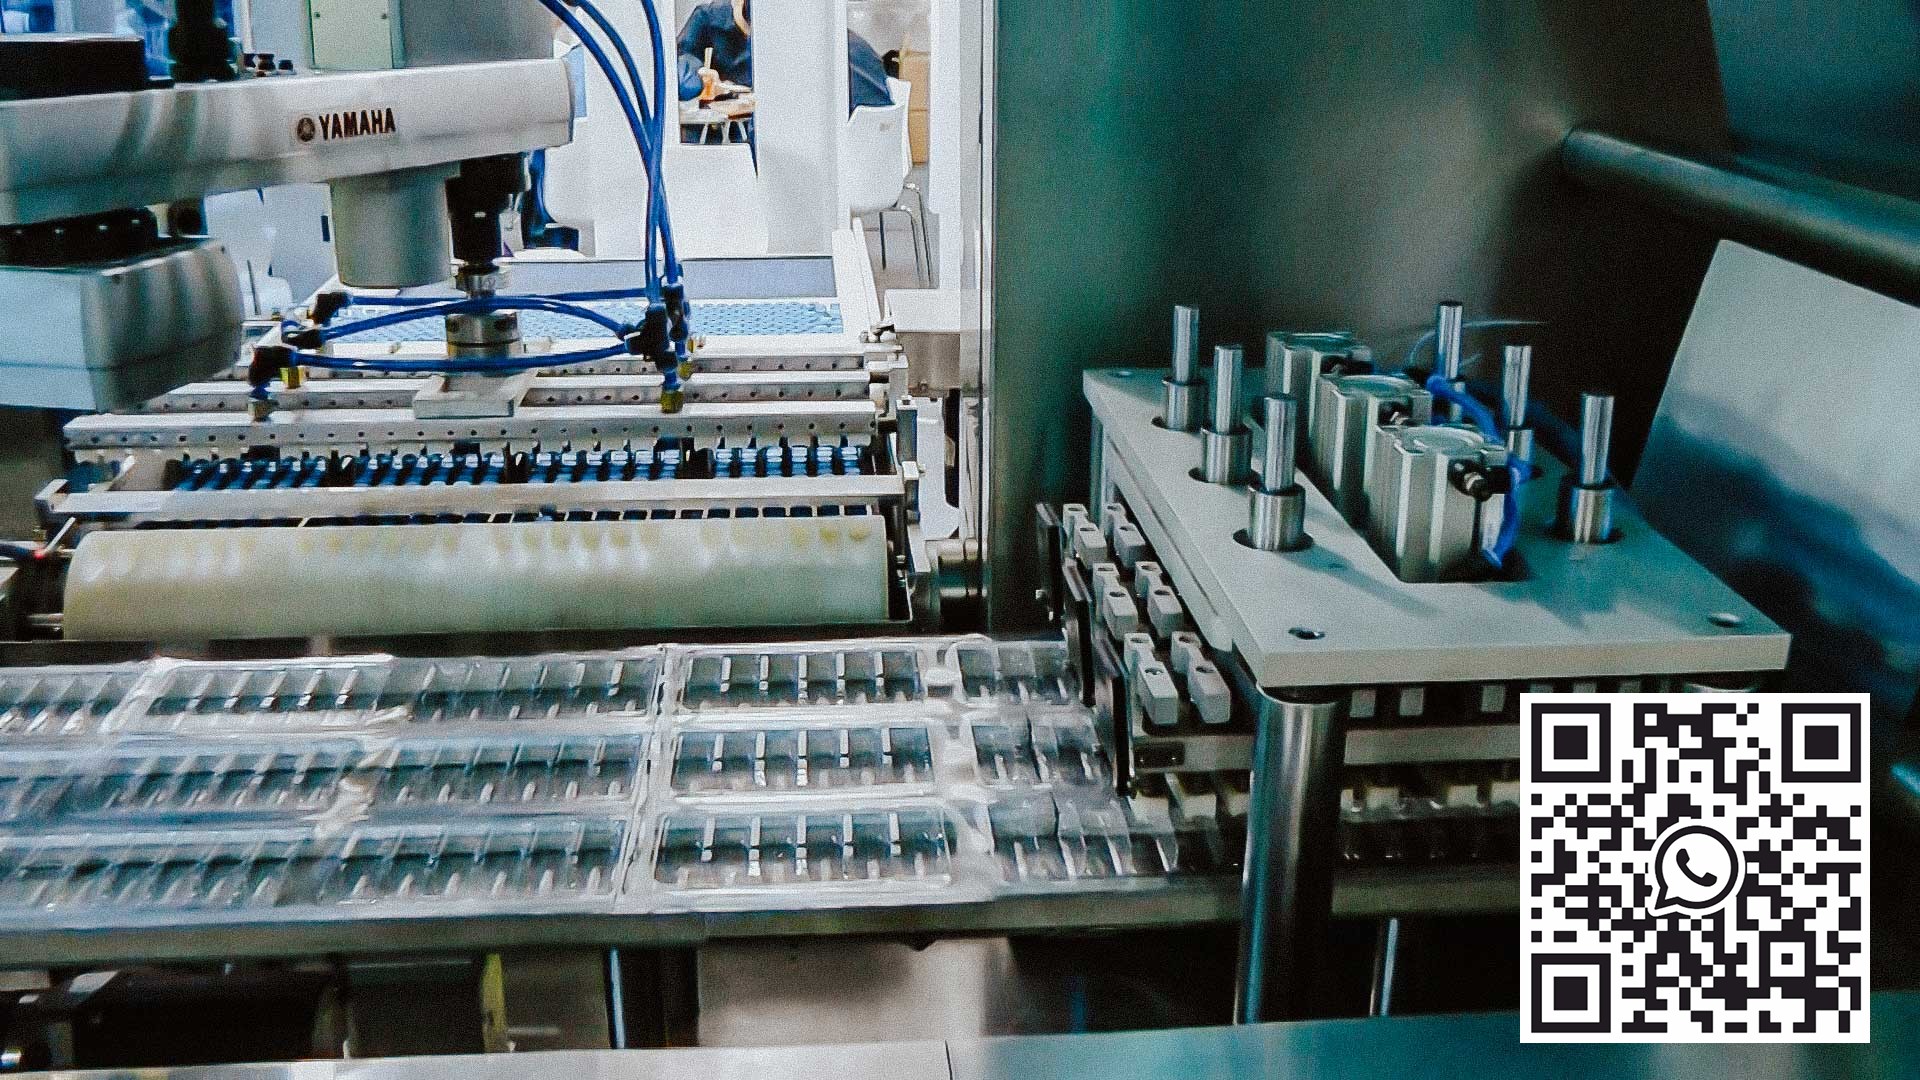 آلة نفطة أوتوماتيكية عالية السرعة لتعبئة نفطة PVC و ALU في زجاجات البنسلين